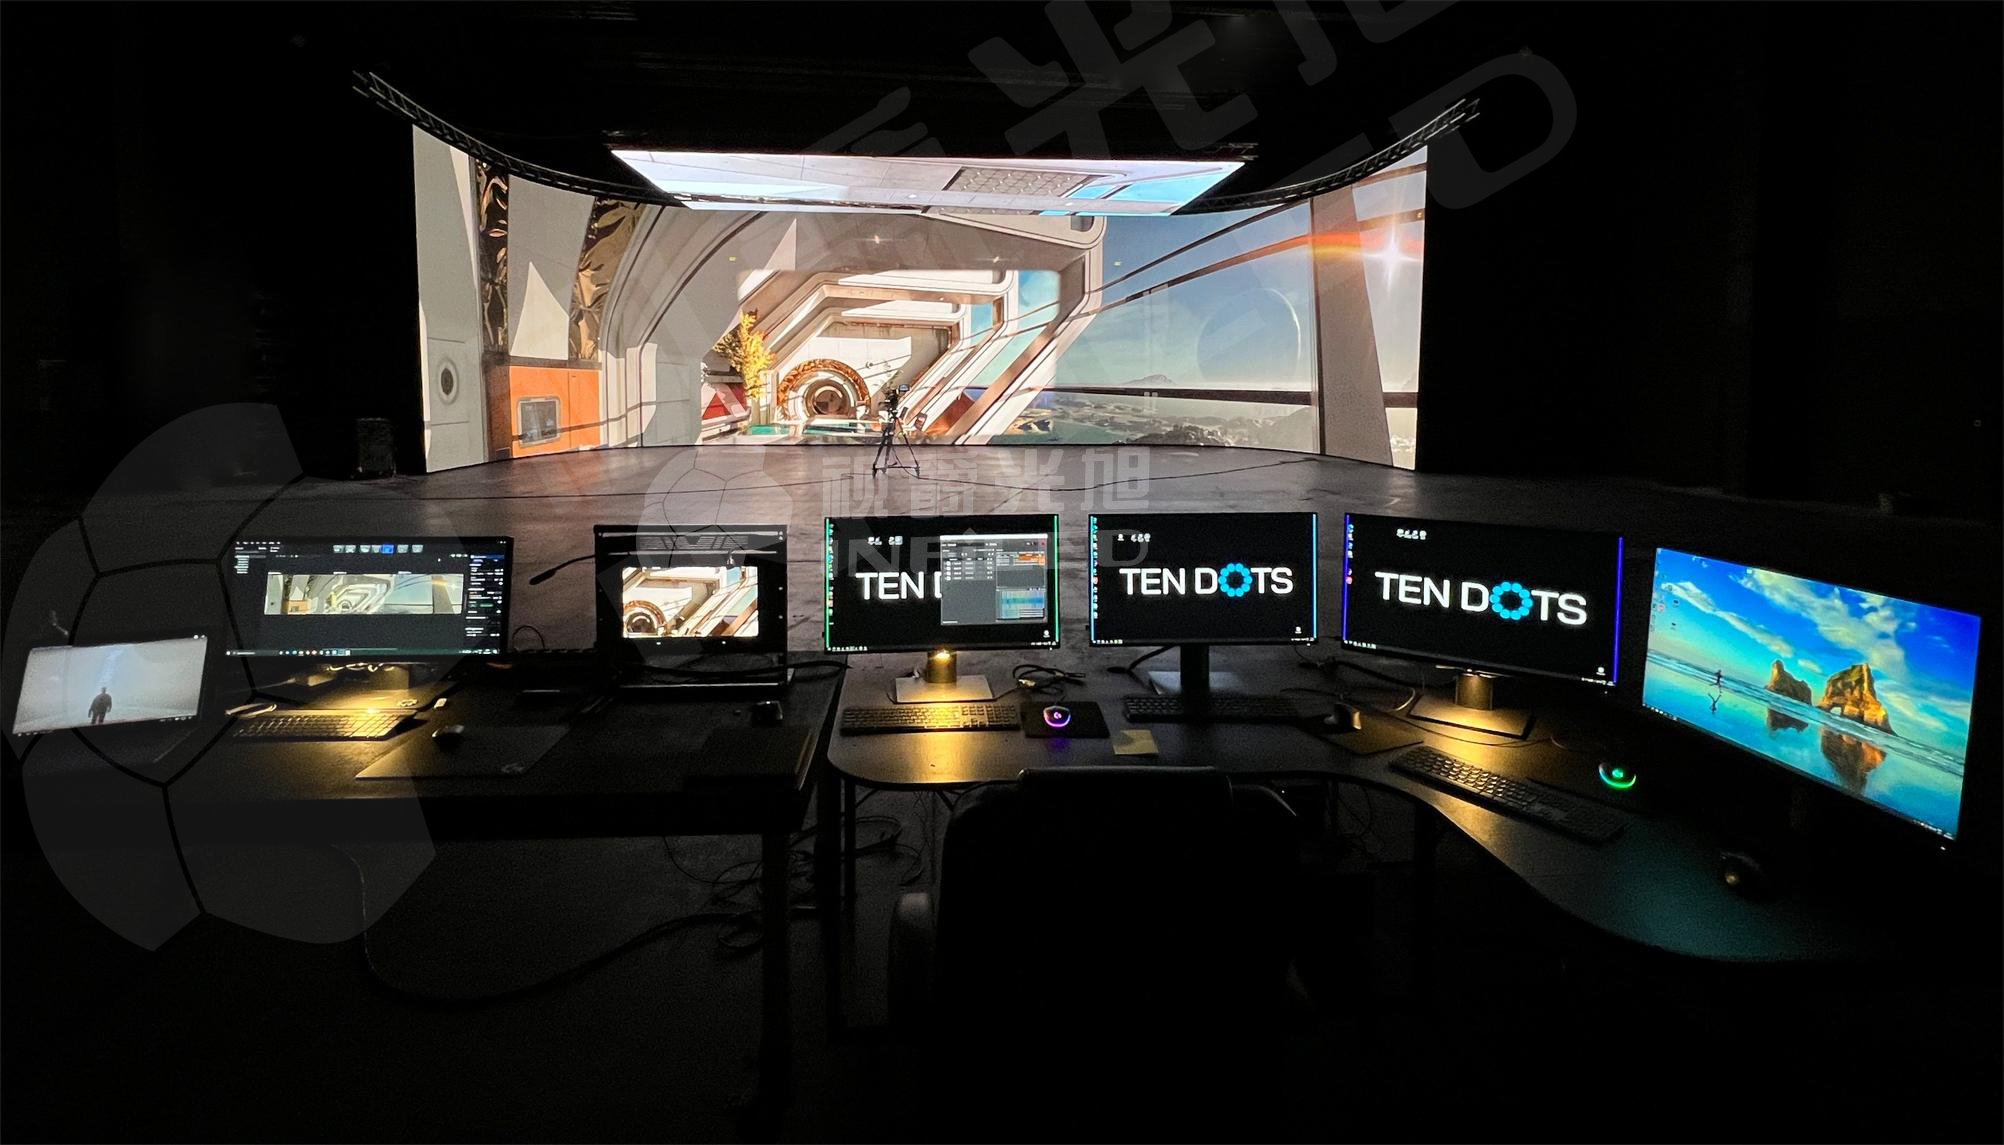 保加利亚知名虚拟制片工作室Ten Dots再次与视爵光旭合作打造XR虚拟拍摄LED显示屏